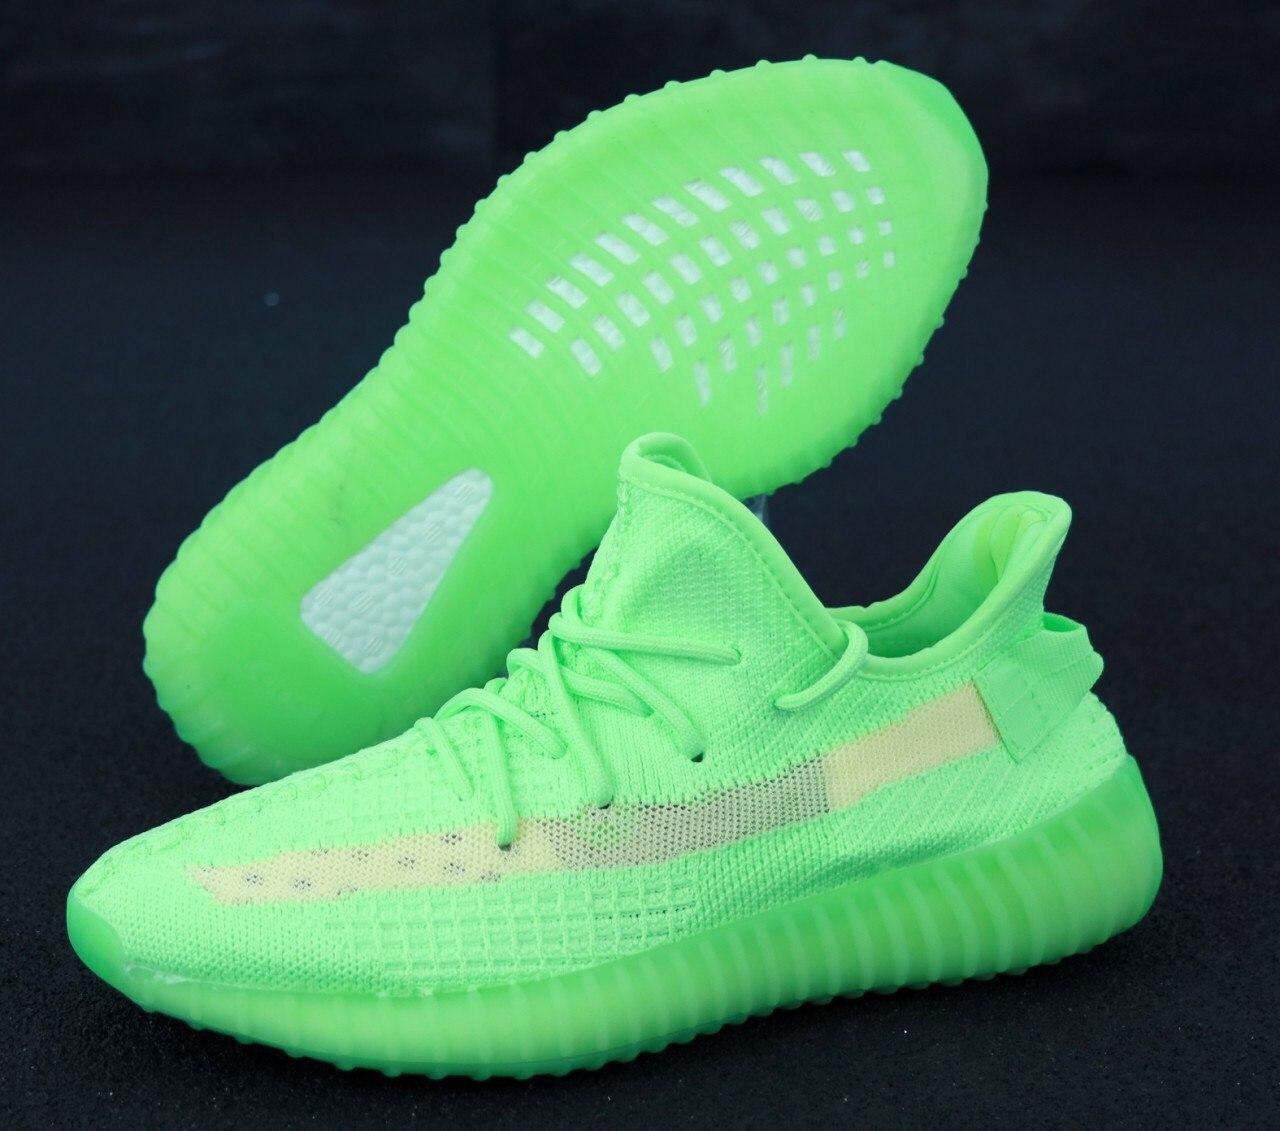 

Мужские кроссовки Adidas Yeezy Boost 350 V2 Green / Адидас Изи Буст 350 В2 Зеленые 41, Зелёный